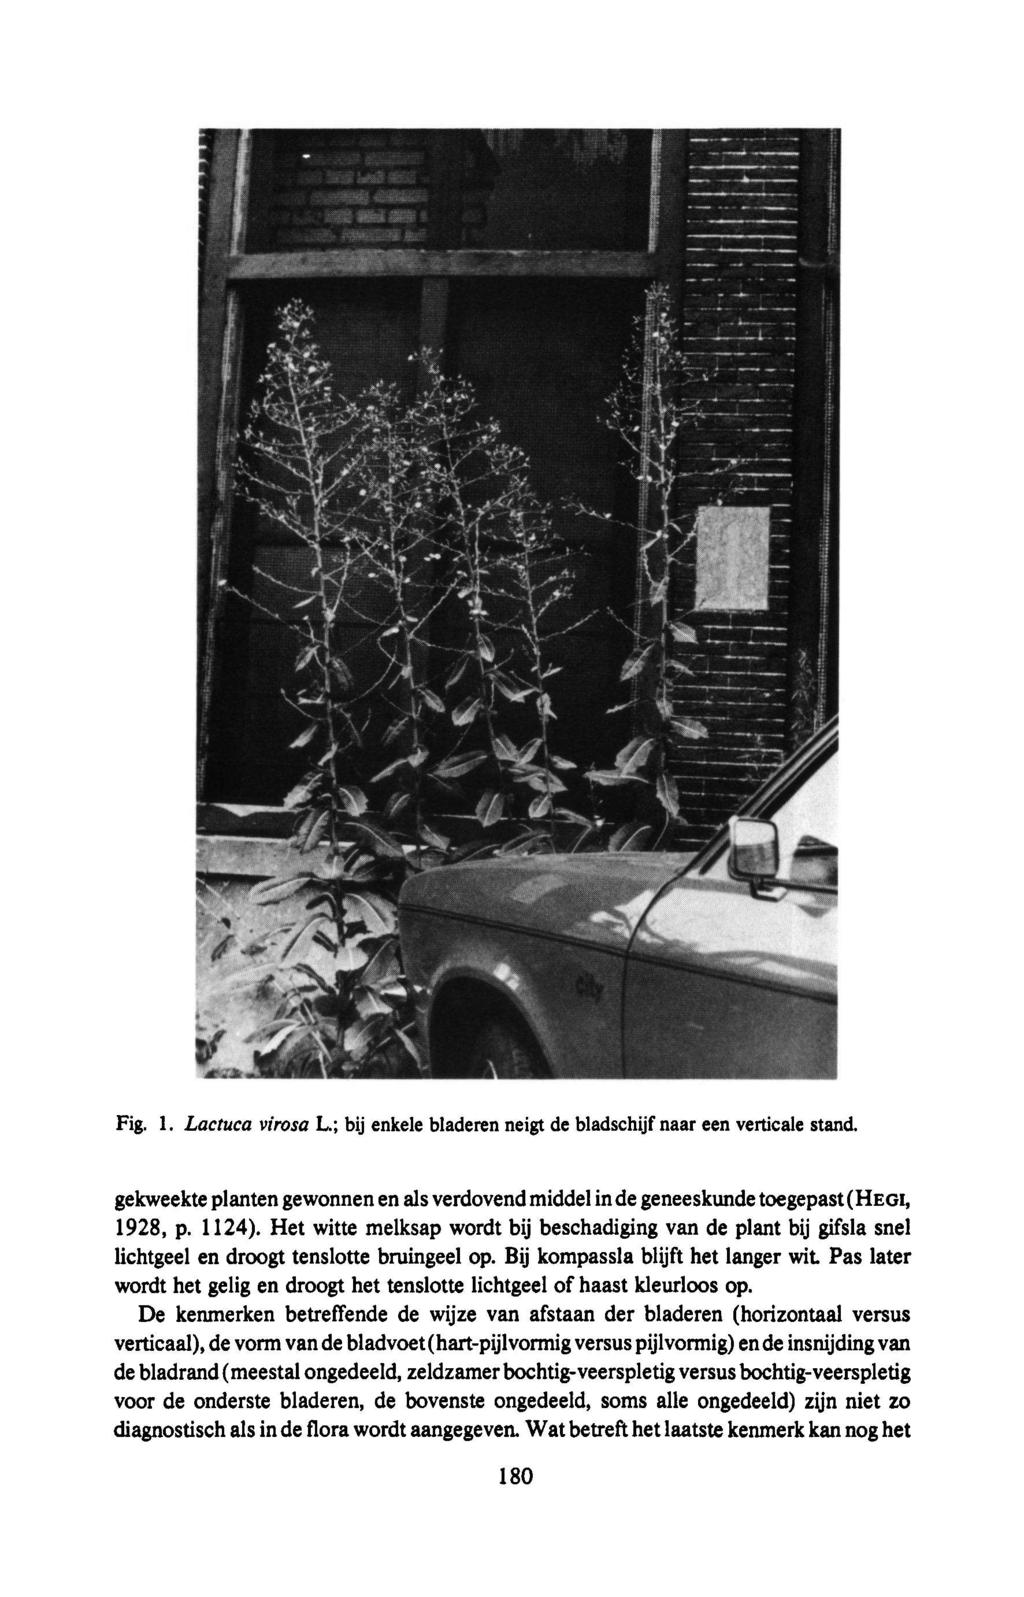 Fig. 1. Lactuca virosa L.; bij enkele bladeren neigt de bladschijf naar een verticale stand. gekweekte planten gewonnen en als verdovendmiddelin de geneeskunde toegepast(hegi, 1928, p. 1124).